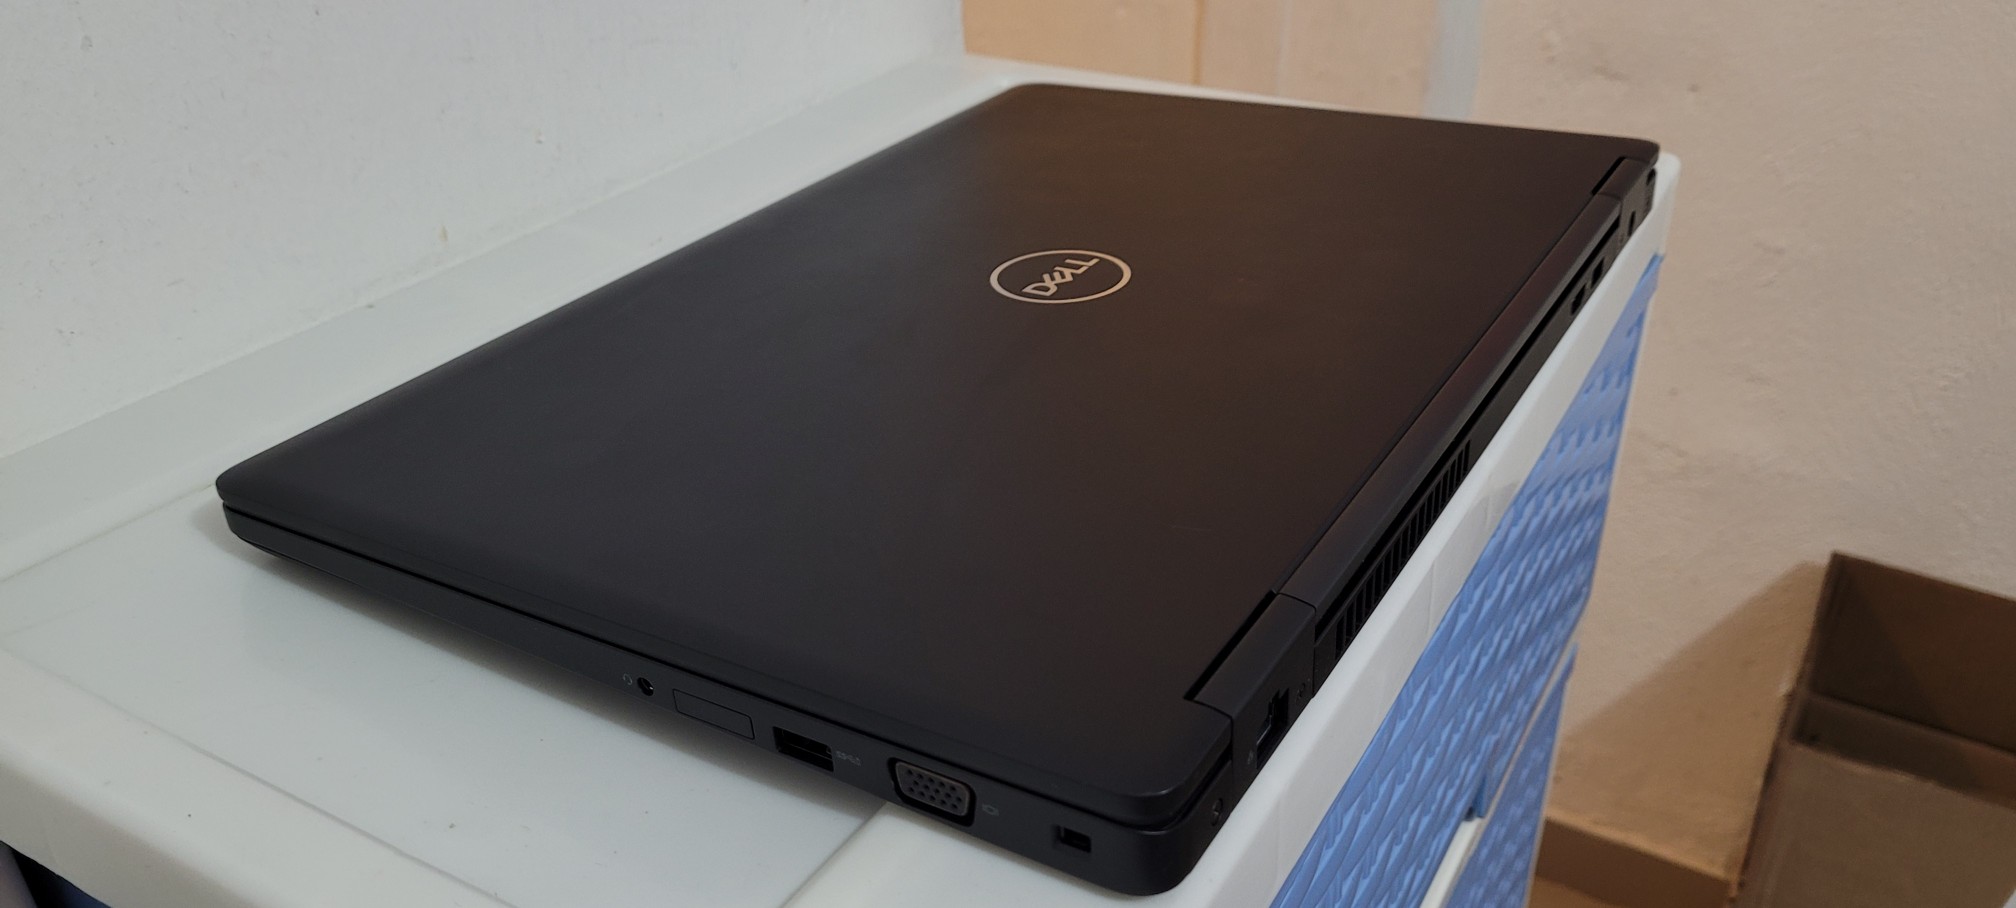 computadoras y laptops - Dell 5580 17 Pulg Core i5 7ma Ram 8gb ddr4 Disco 128gb SSD Wifi 2